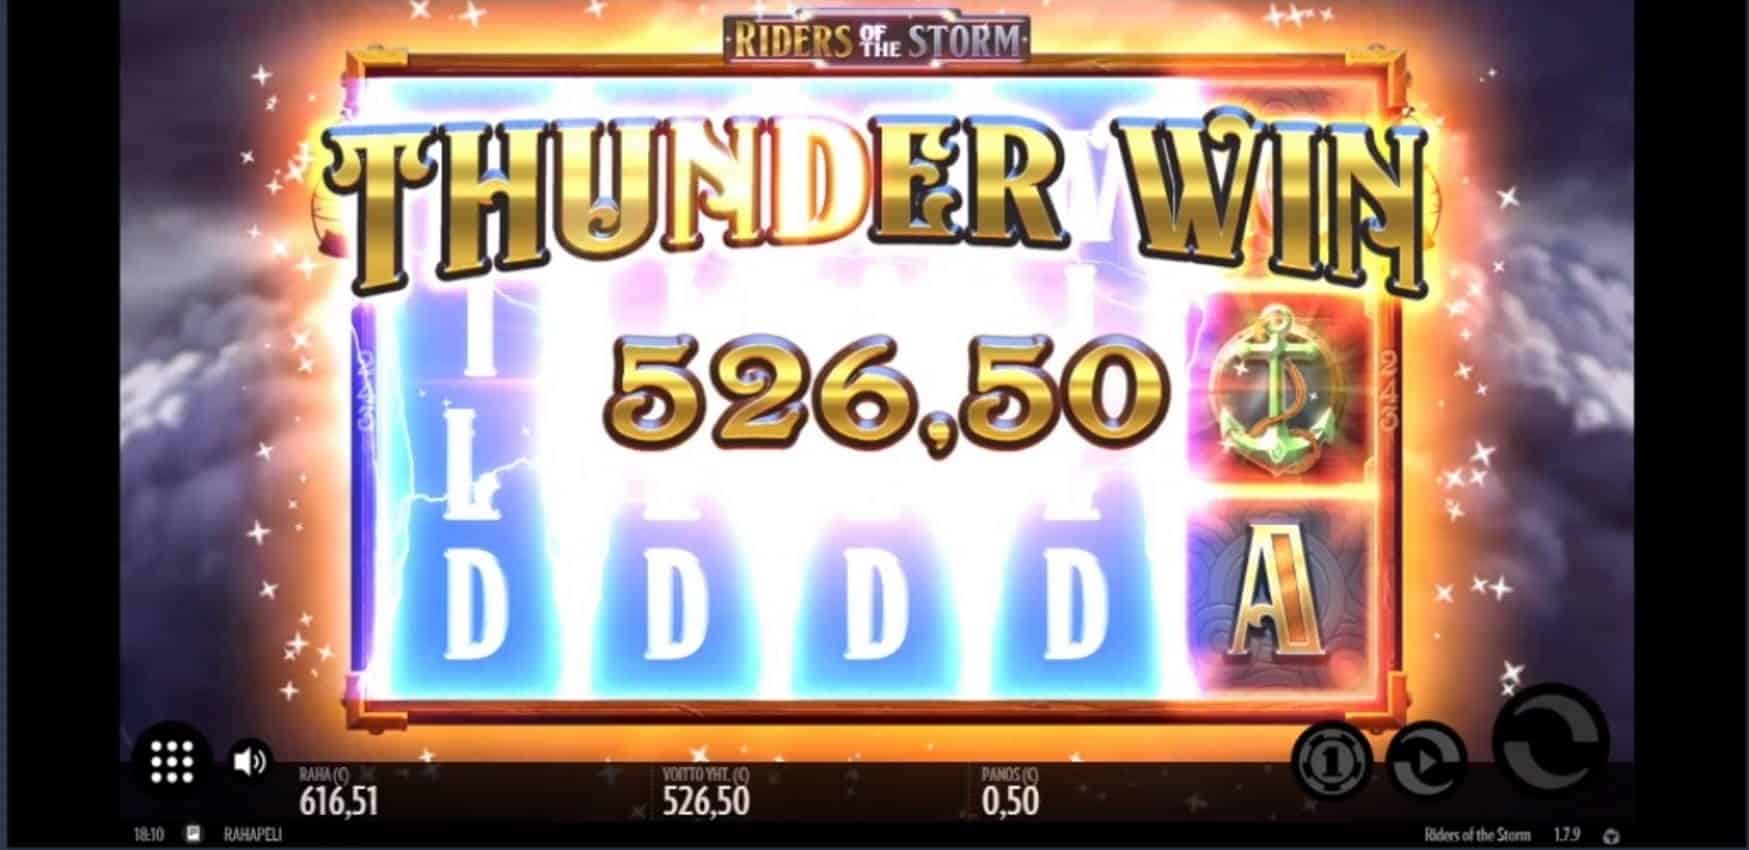 Riders of the Storm Casino win picture by Apina 27.7.2022 526.50e 1053X Supremo